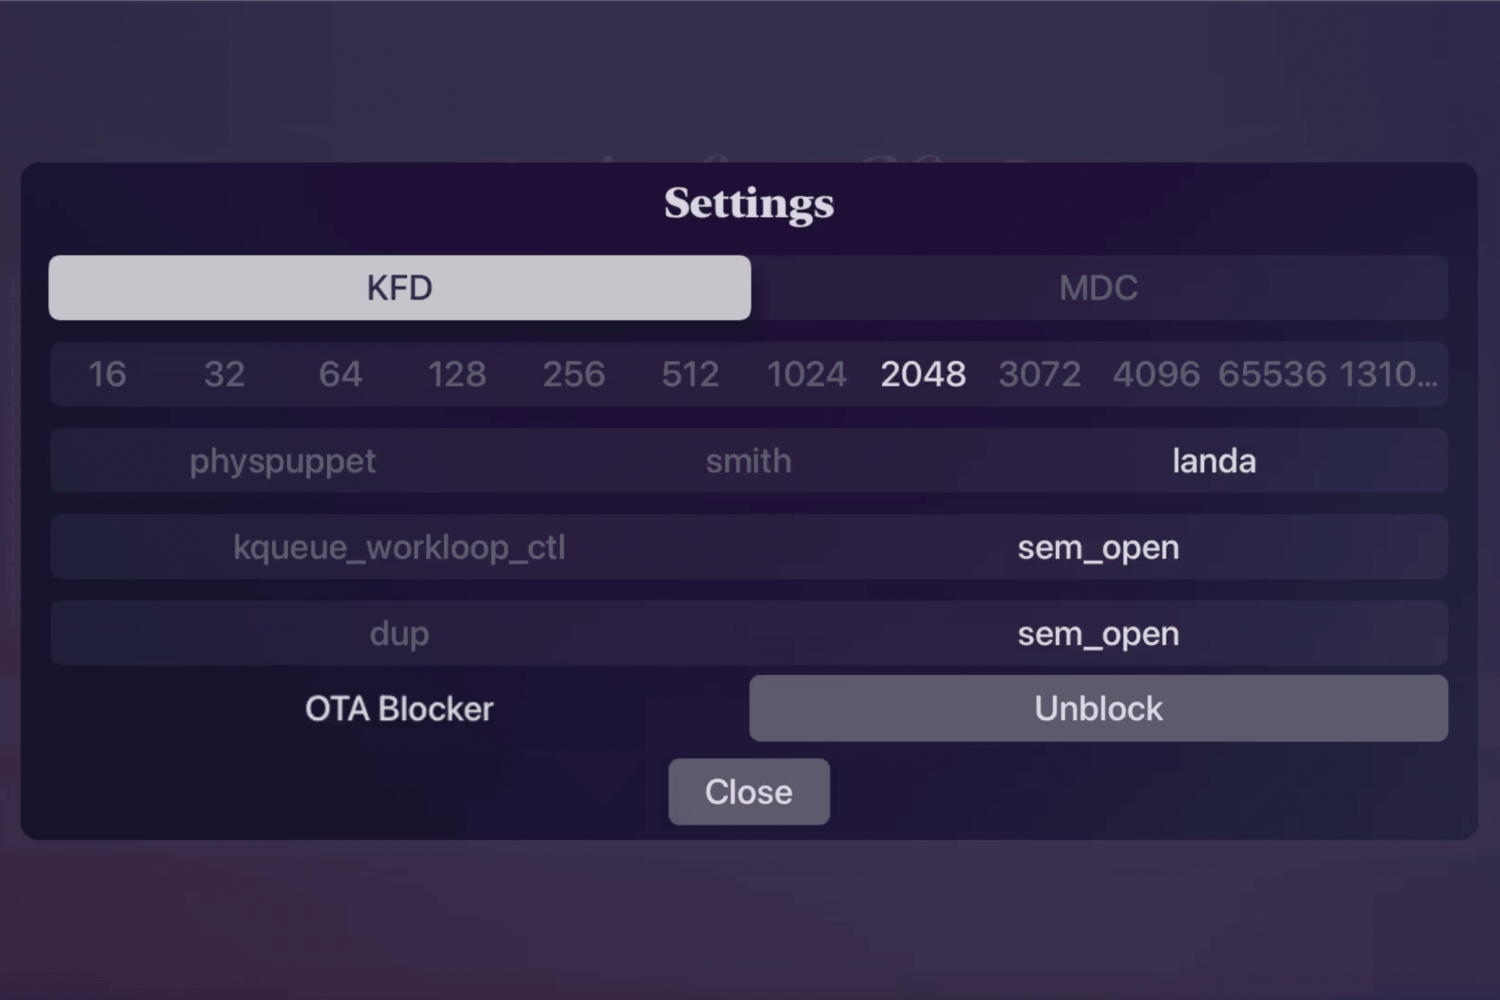 Misaka for tvOS OTA update blocker setting.